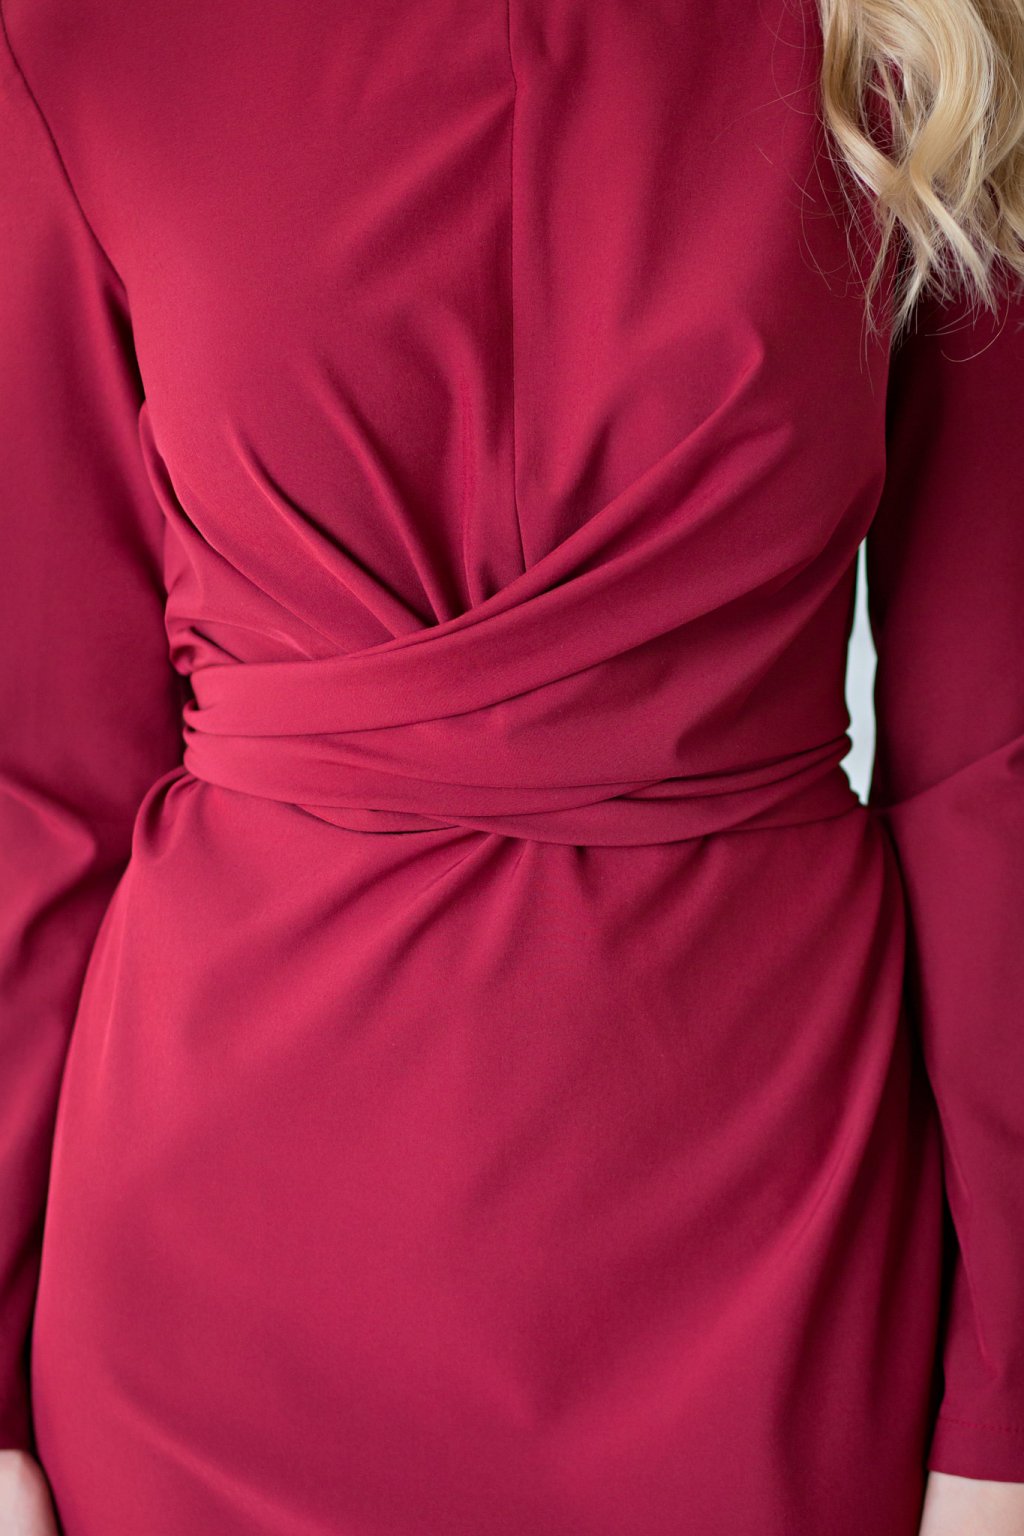 Платье Джина цвет электрик (Пб-194-2) - 3